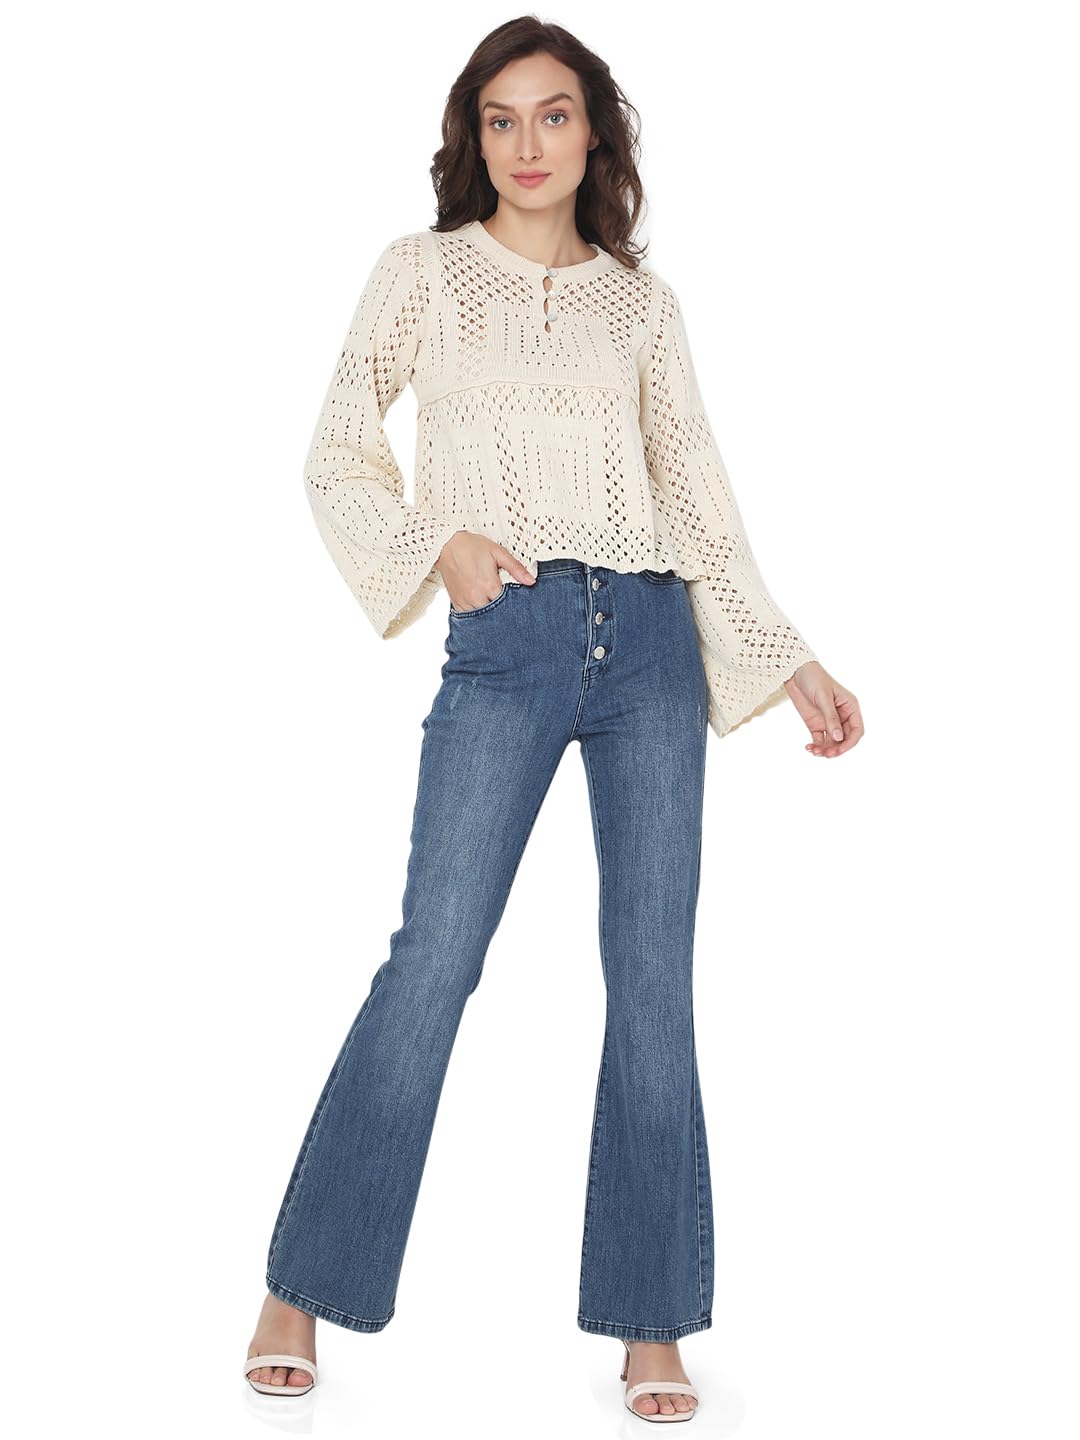 VERO MODA Women's Cotton Round Neck Sweater (10294379- Birch